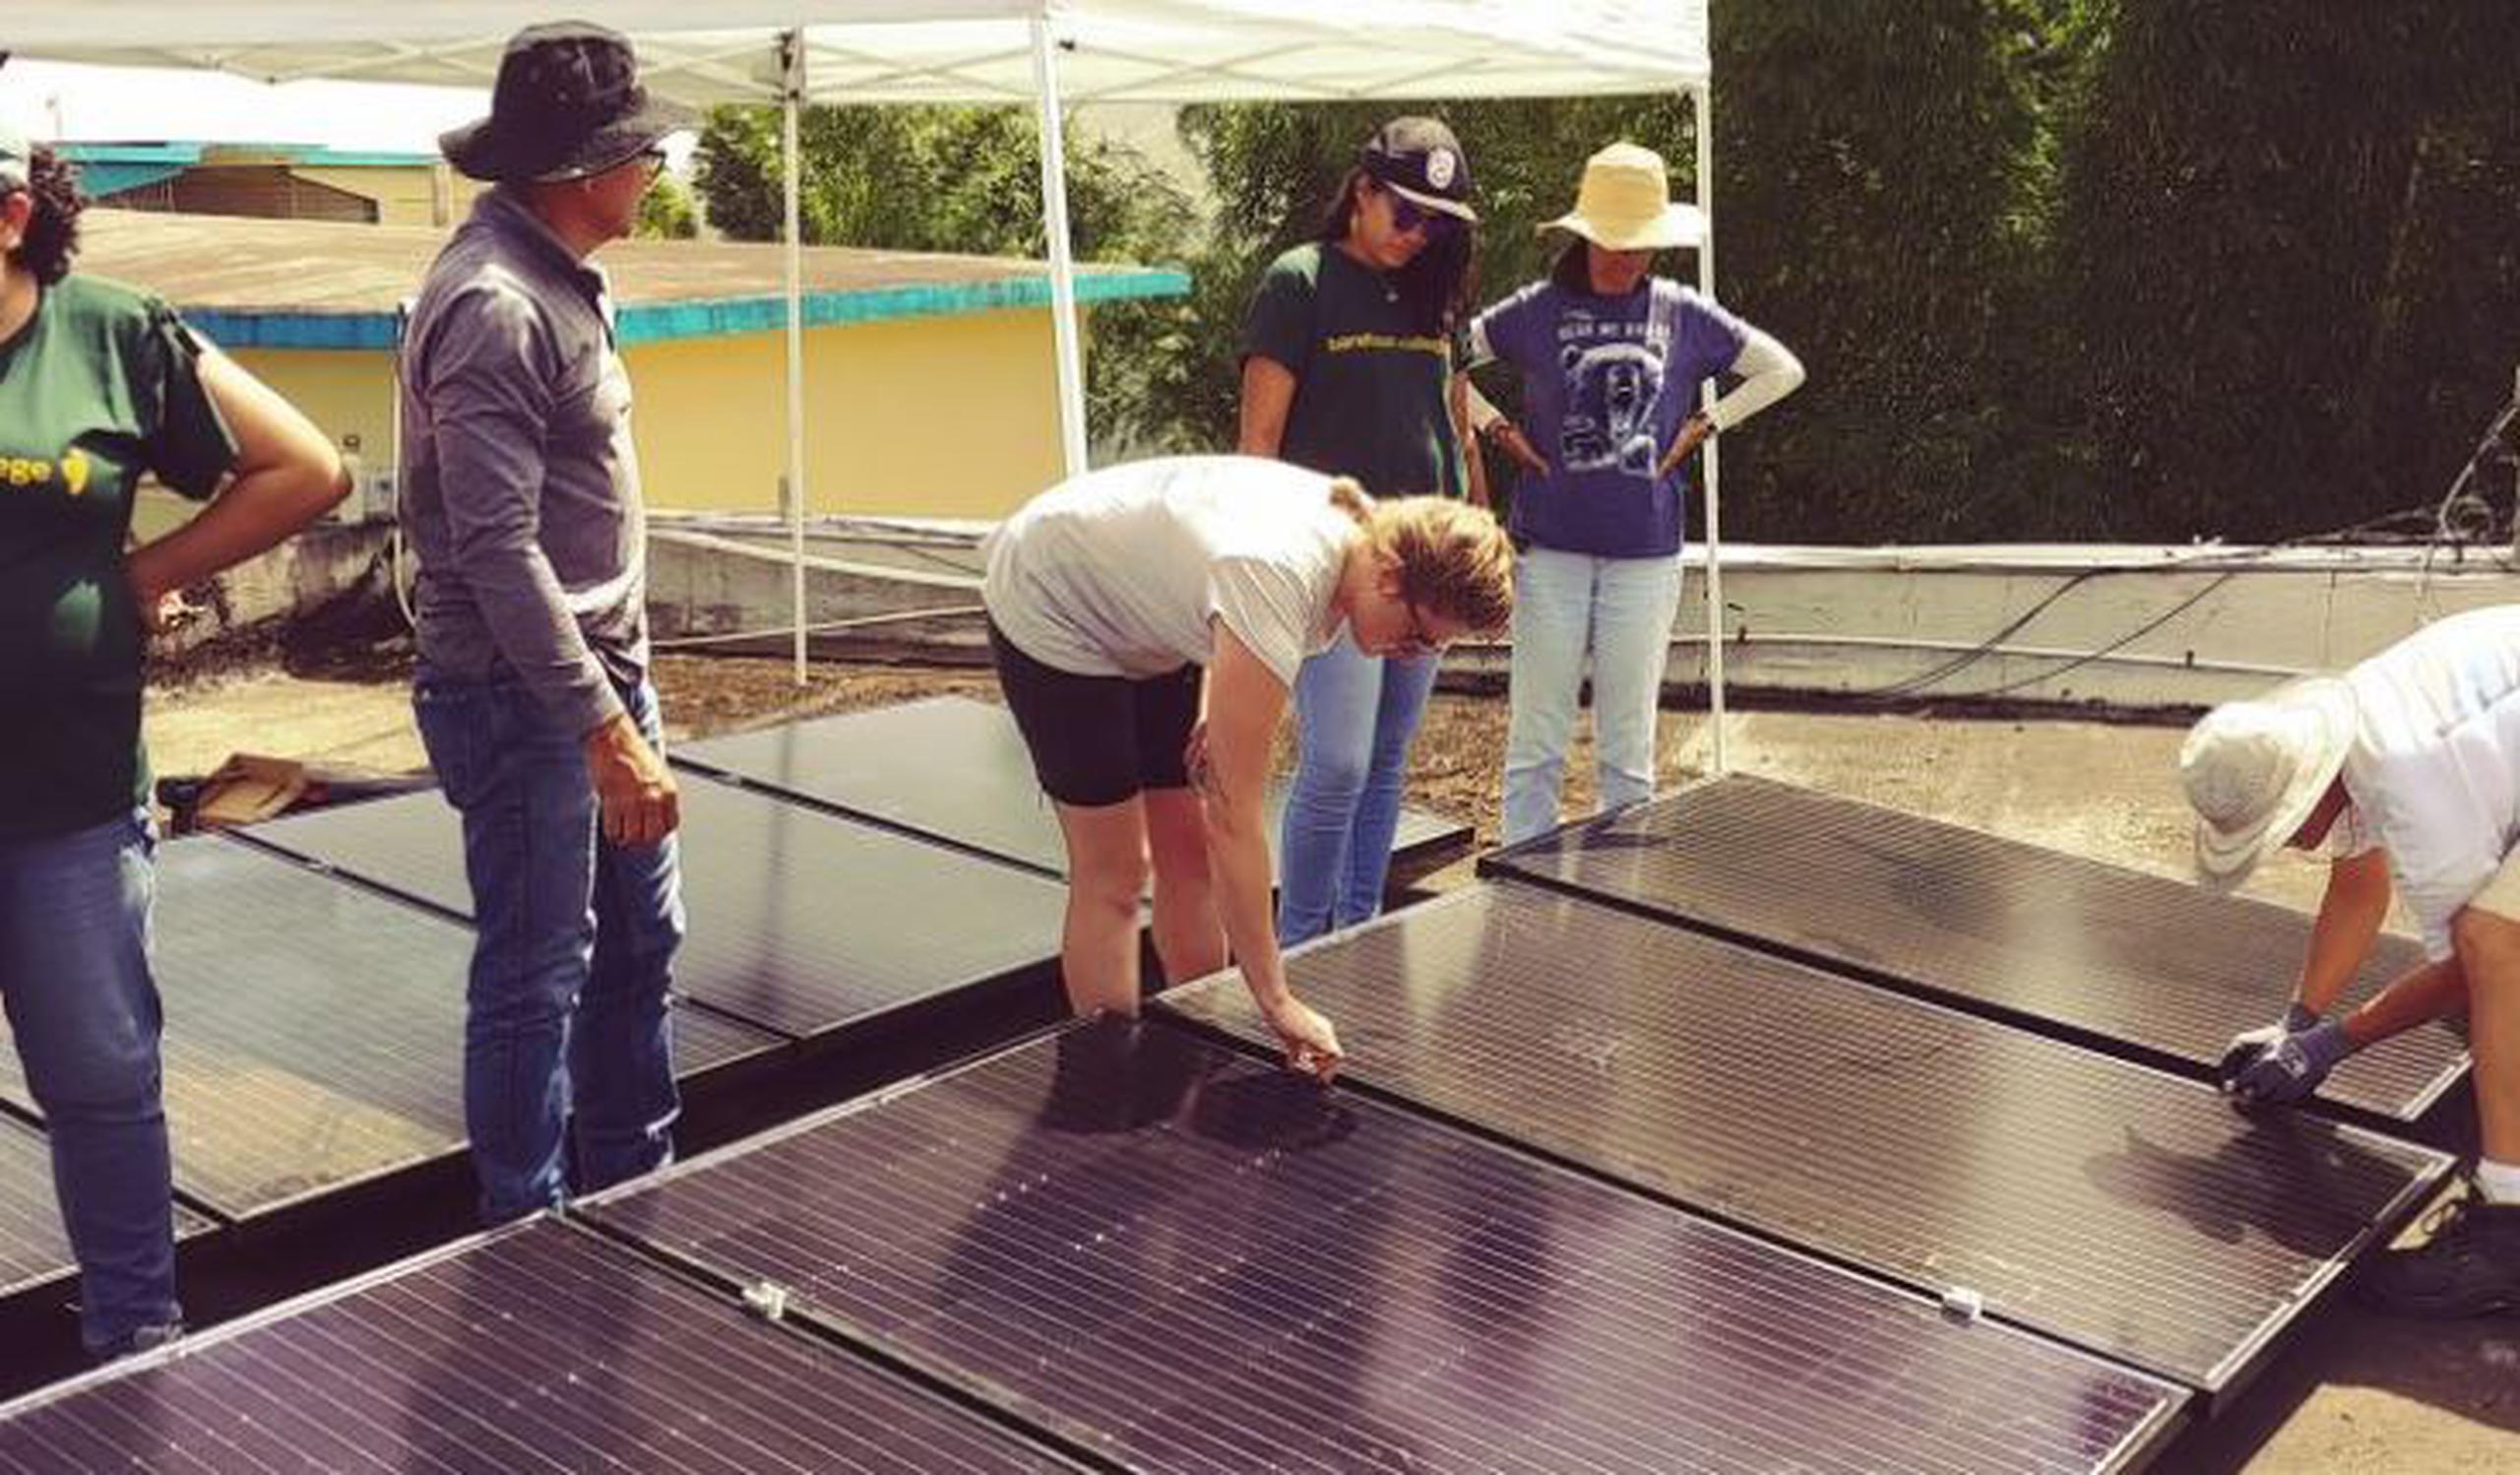 De 5,500 electricistas certificados en Puerto Rico solo 18 son mujeres. Y de ellas, solo cinco contaban con una certificación para poder instalar sistemas solares.